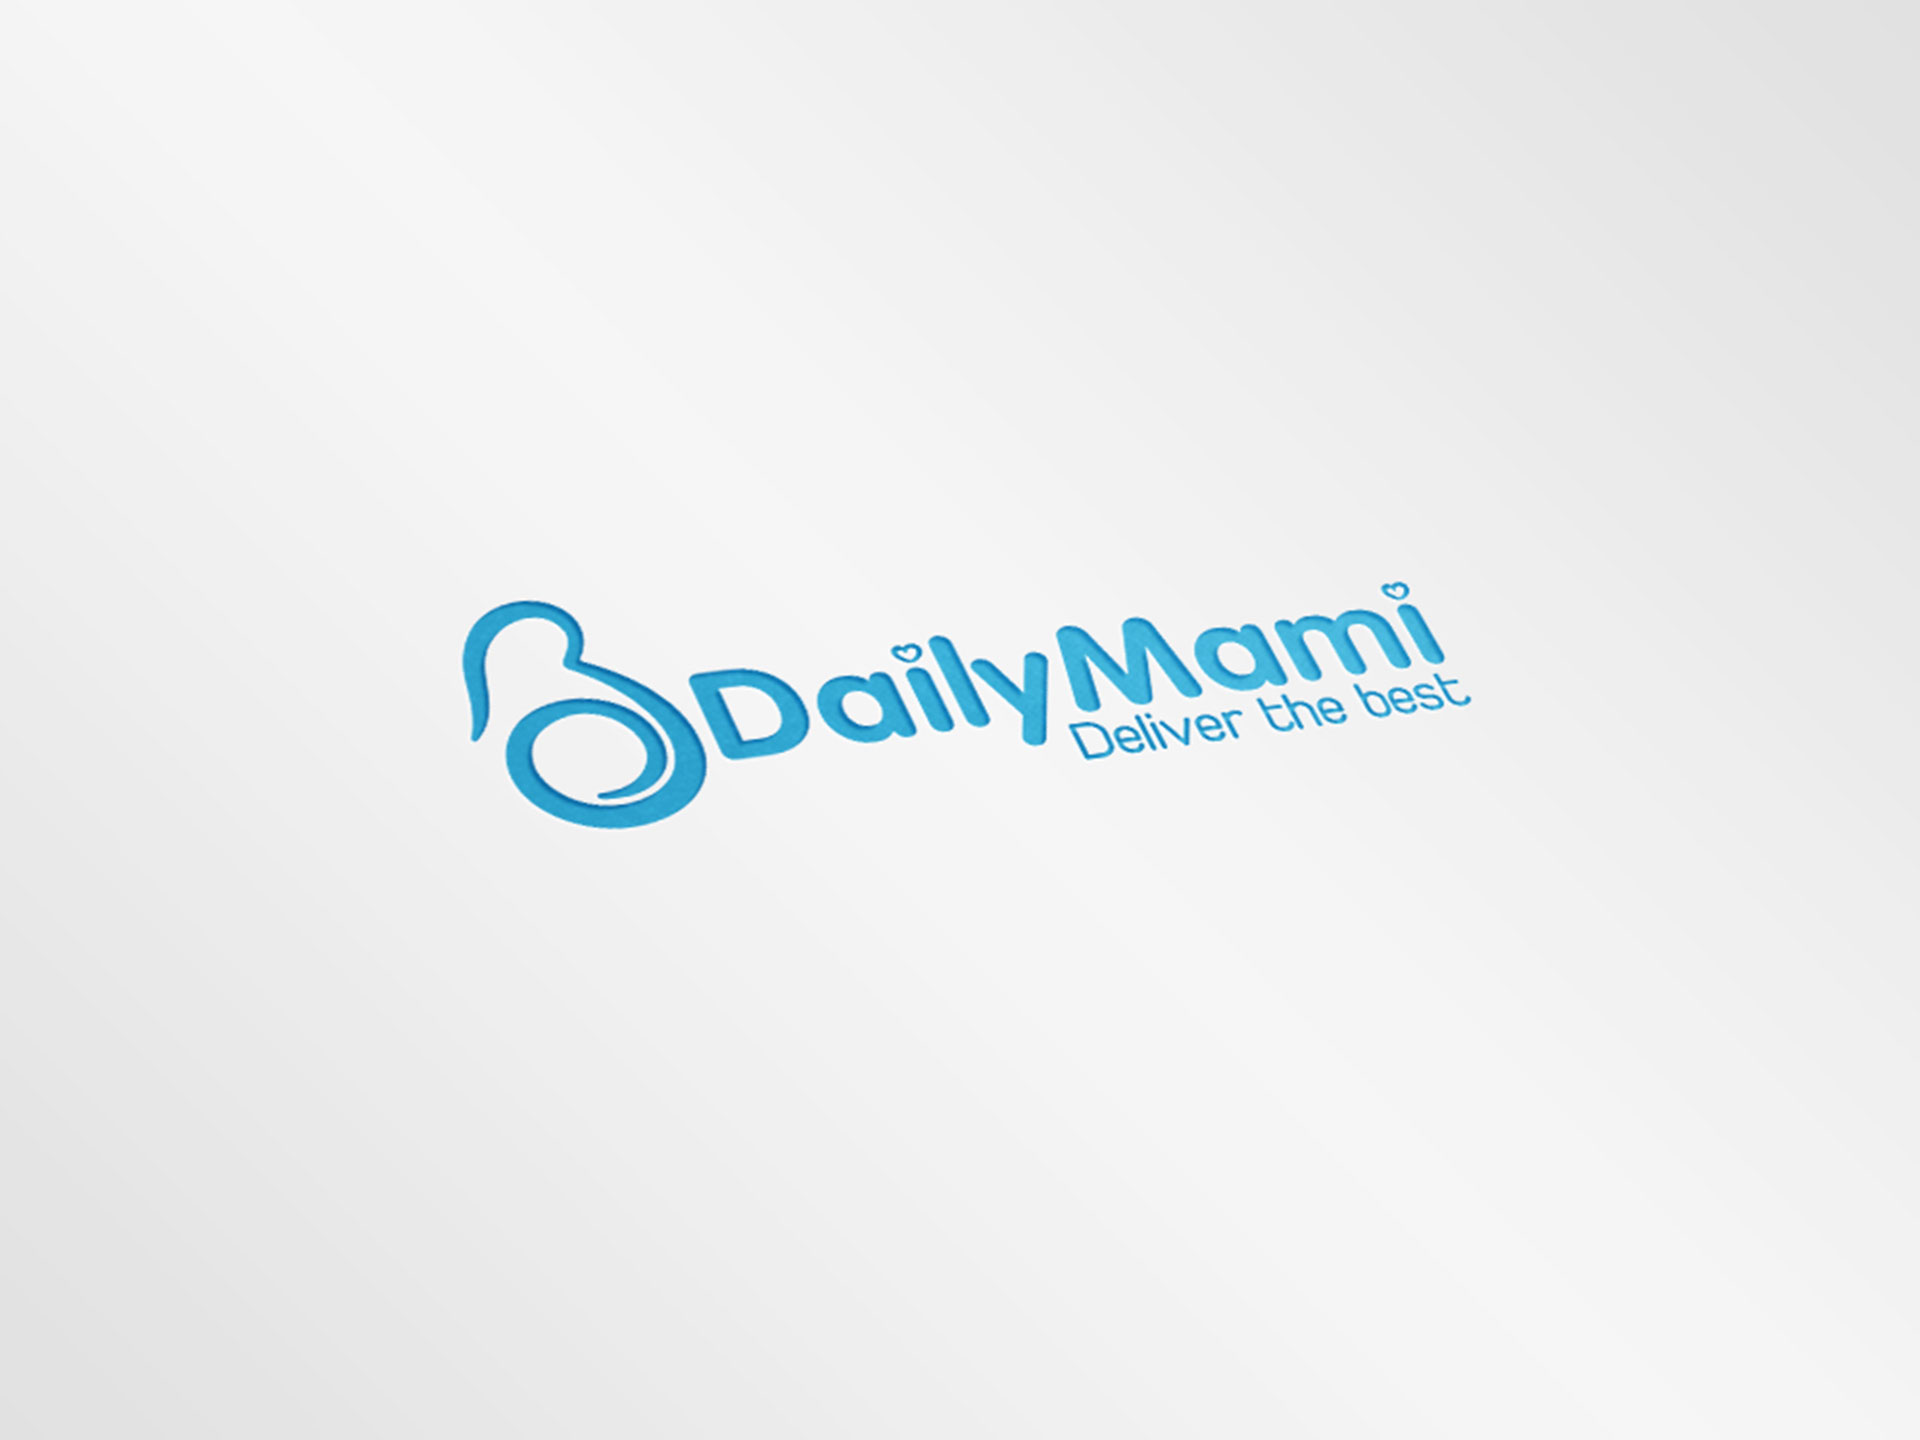 Thiết kế logo thời trang mẹ và bé Daily Mami tại Hà Nam, Hà Nội